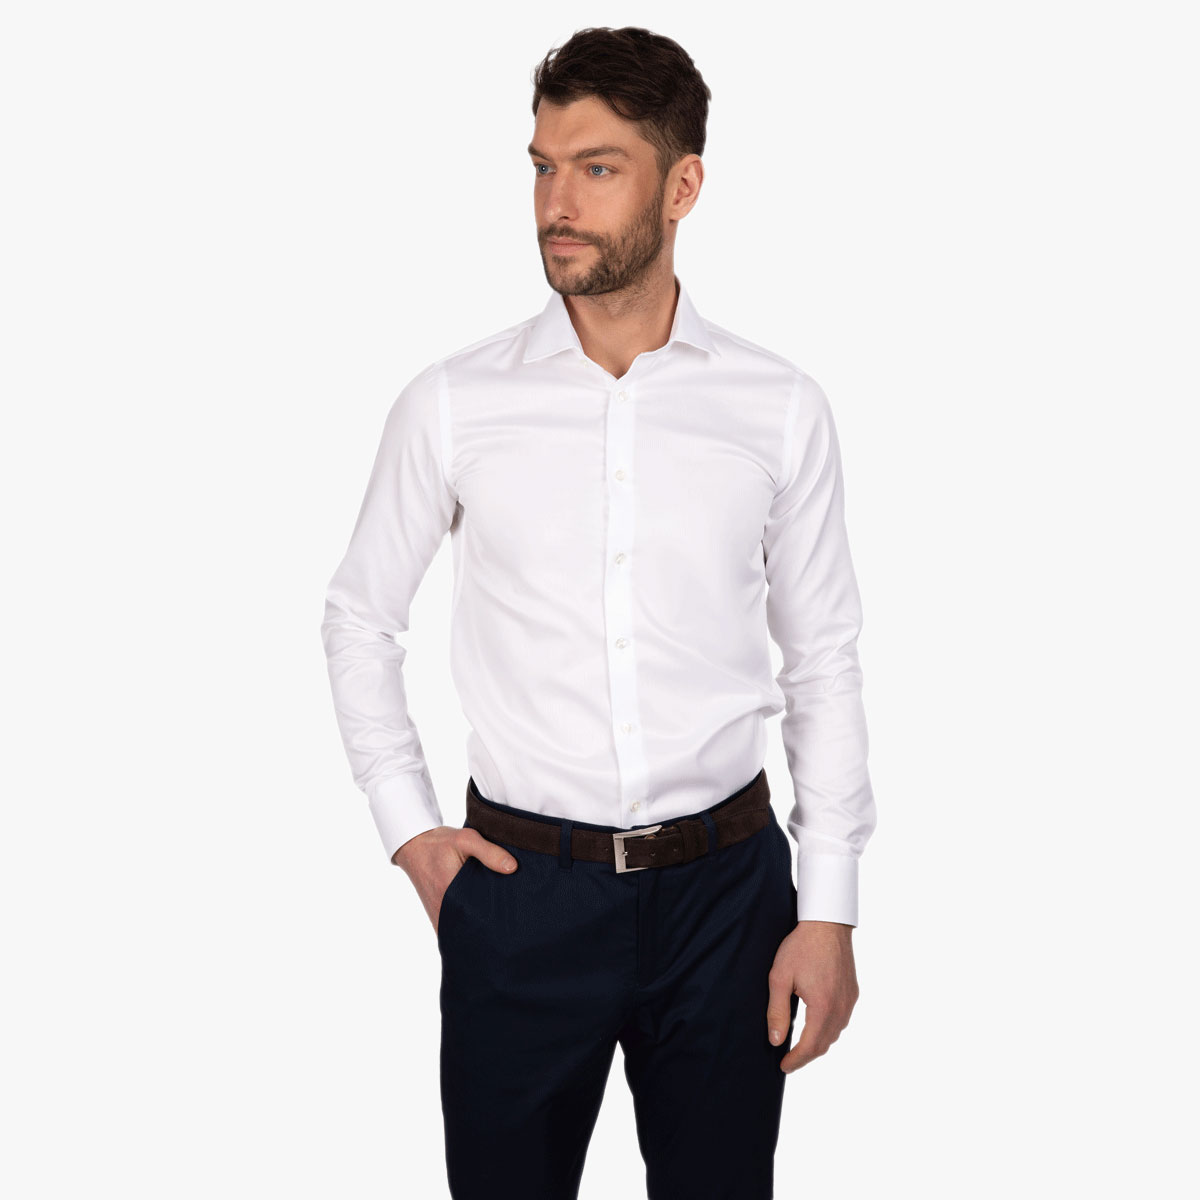 Super Slim Fit Hemd in weiß mit Sportmanschette